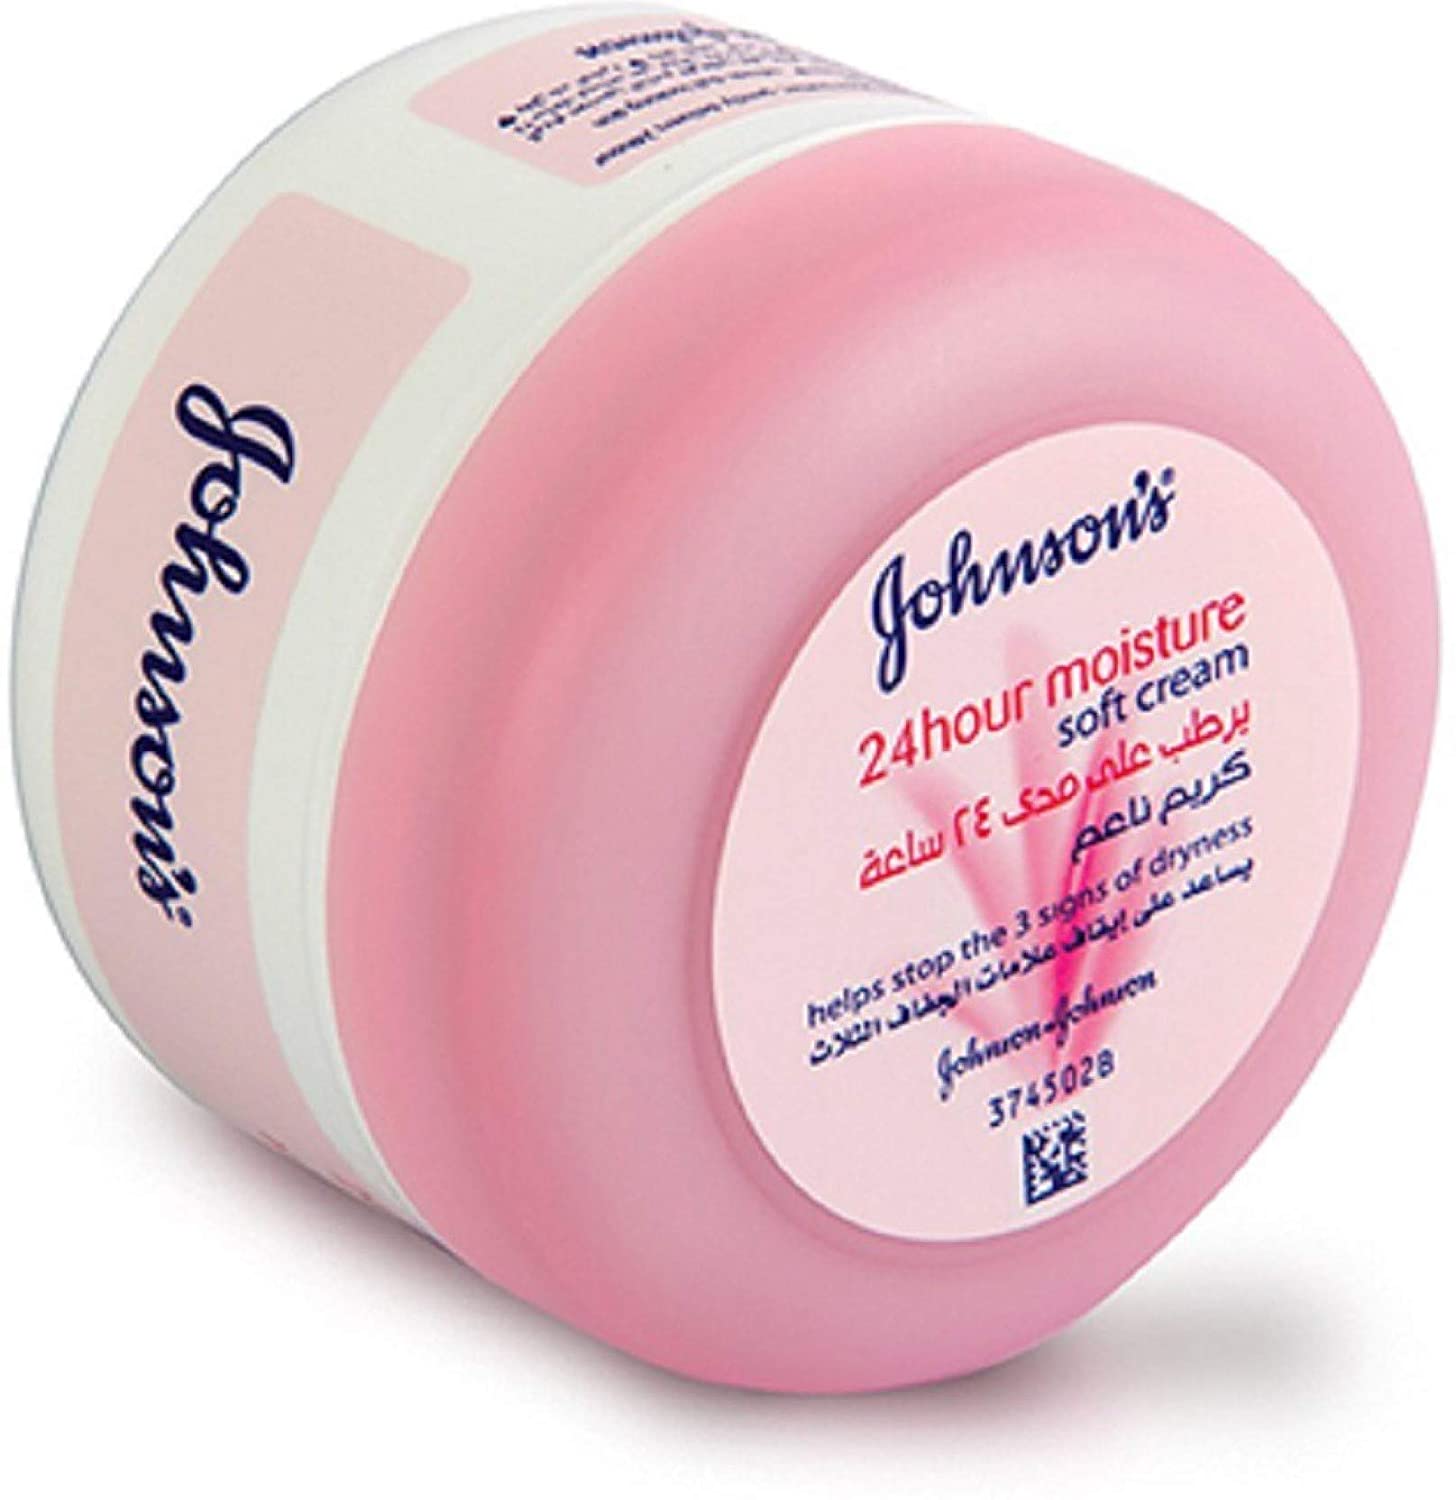 Johnsons 24 Hour Moisture Soft Cream 200ml Pink - Baby Moo